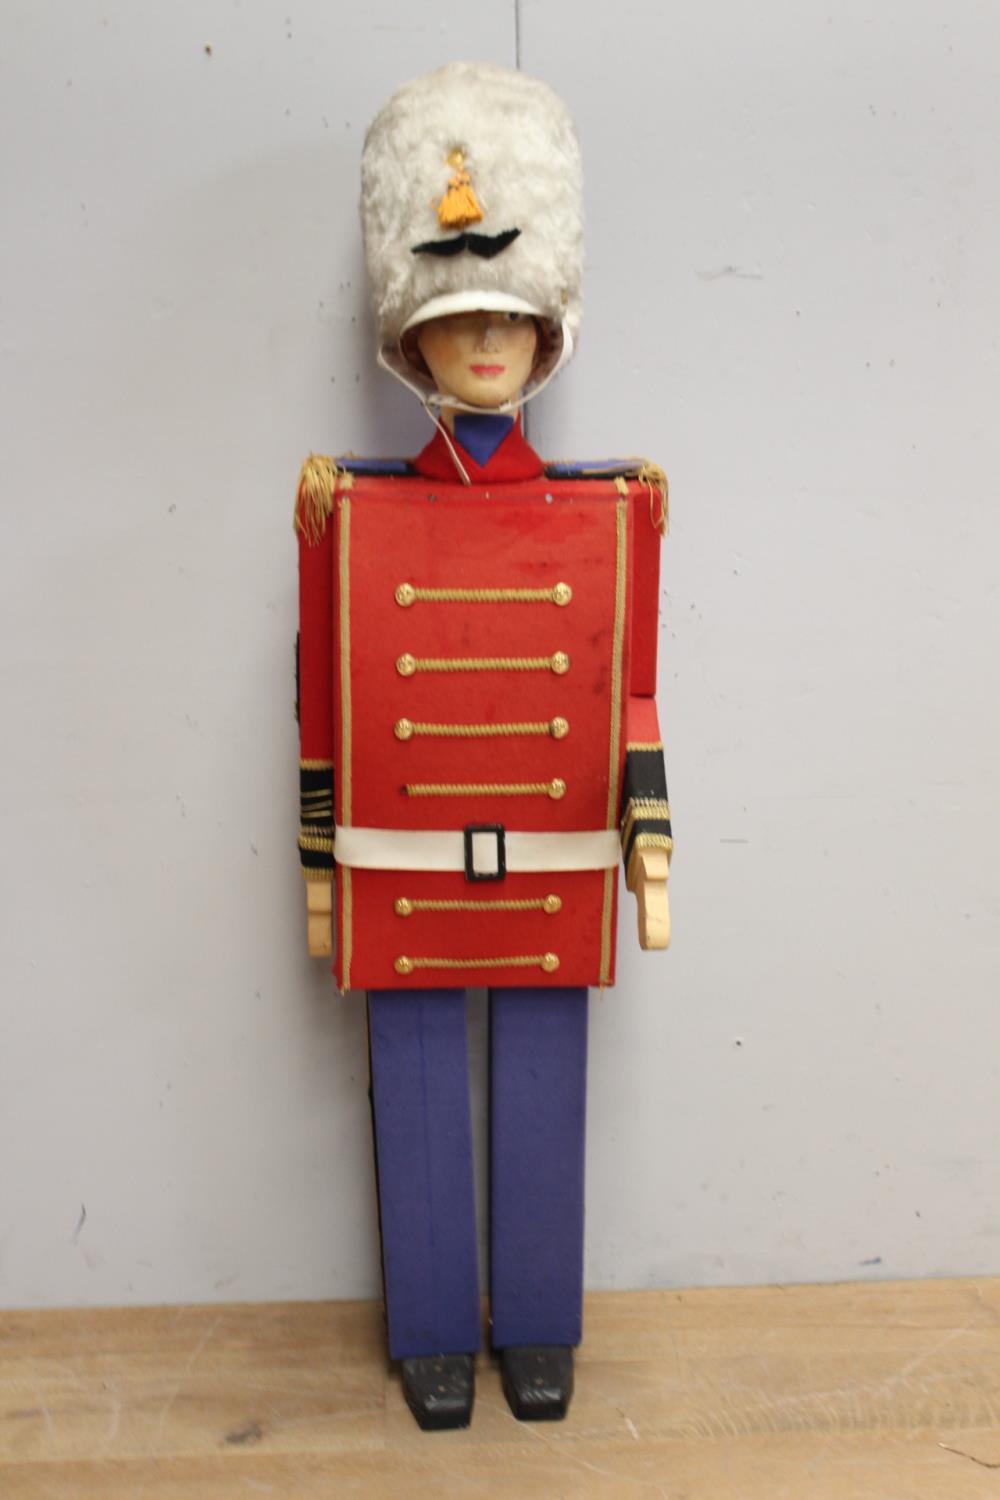 Large model of a toy soldier { 160cm H X 42cm W X 30cm D }.